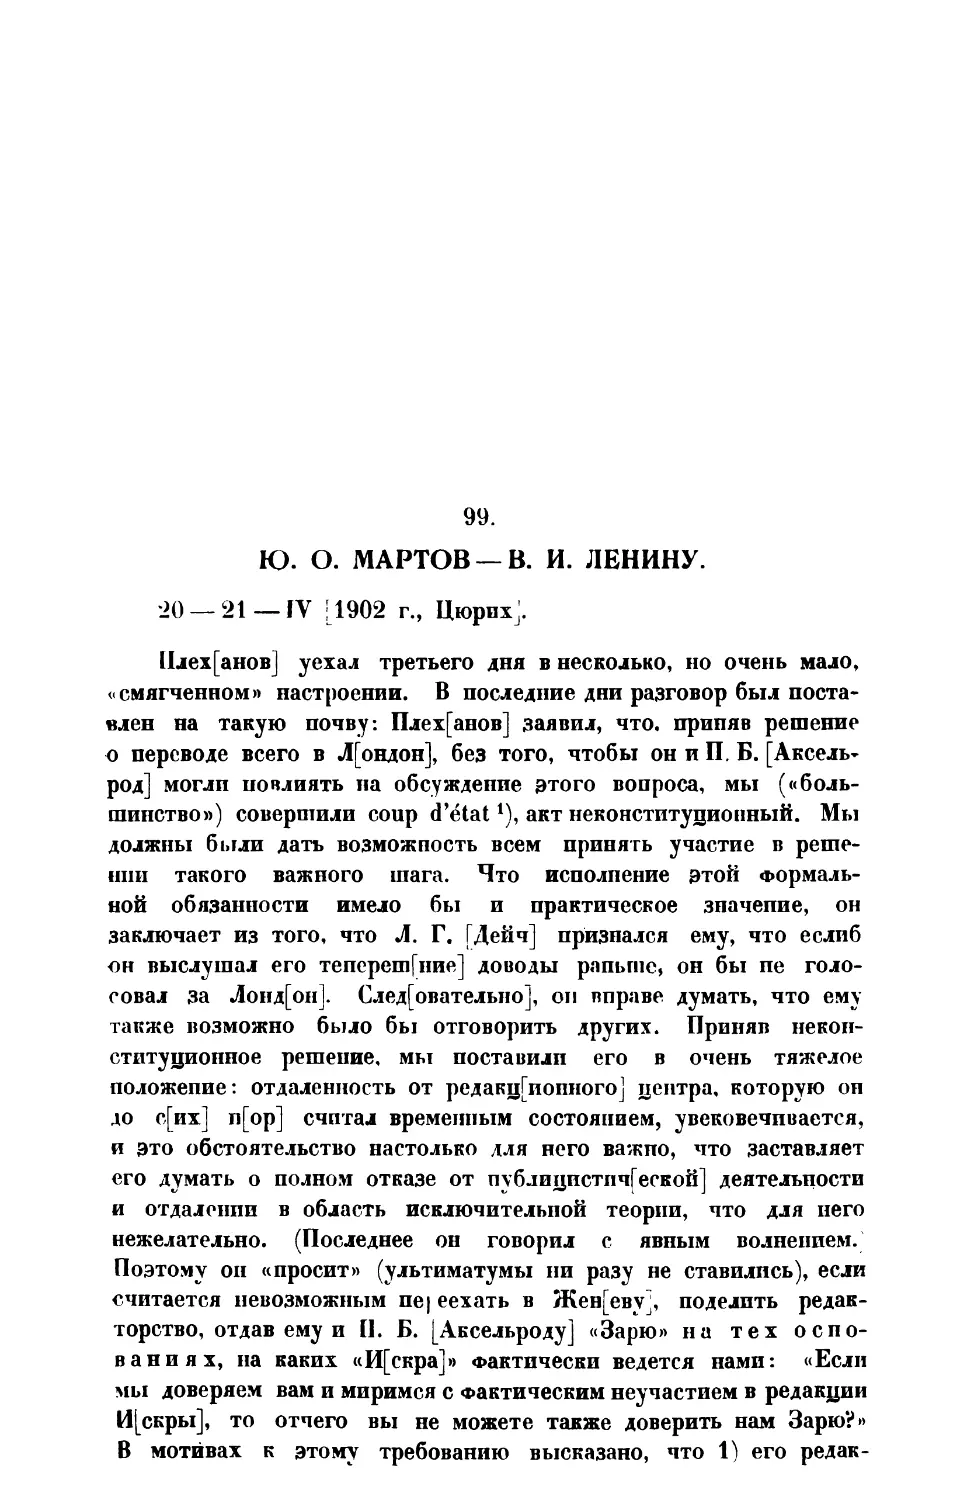 99. Ю. О. Мартов. — Письмо В. Ленину от 20— 21 IV 1902 г.